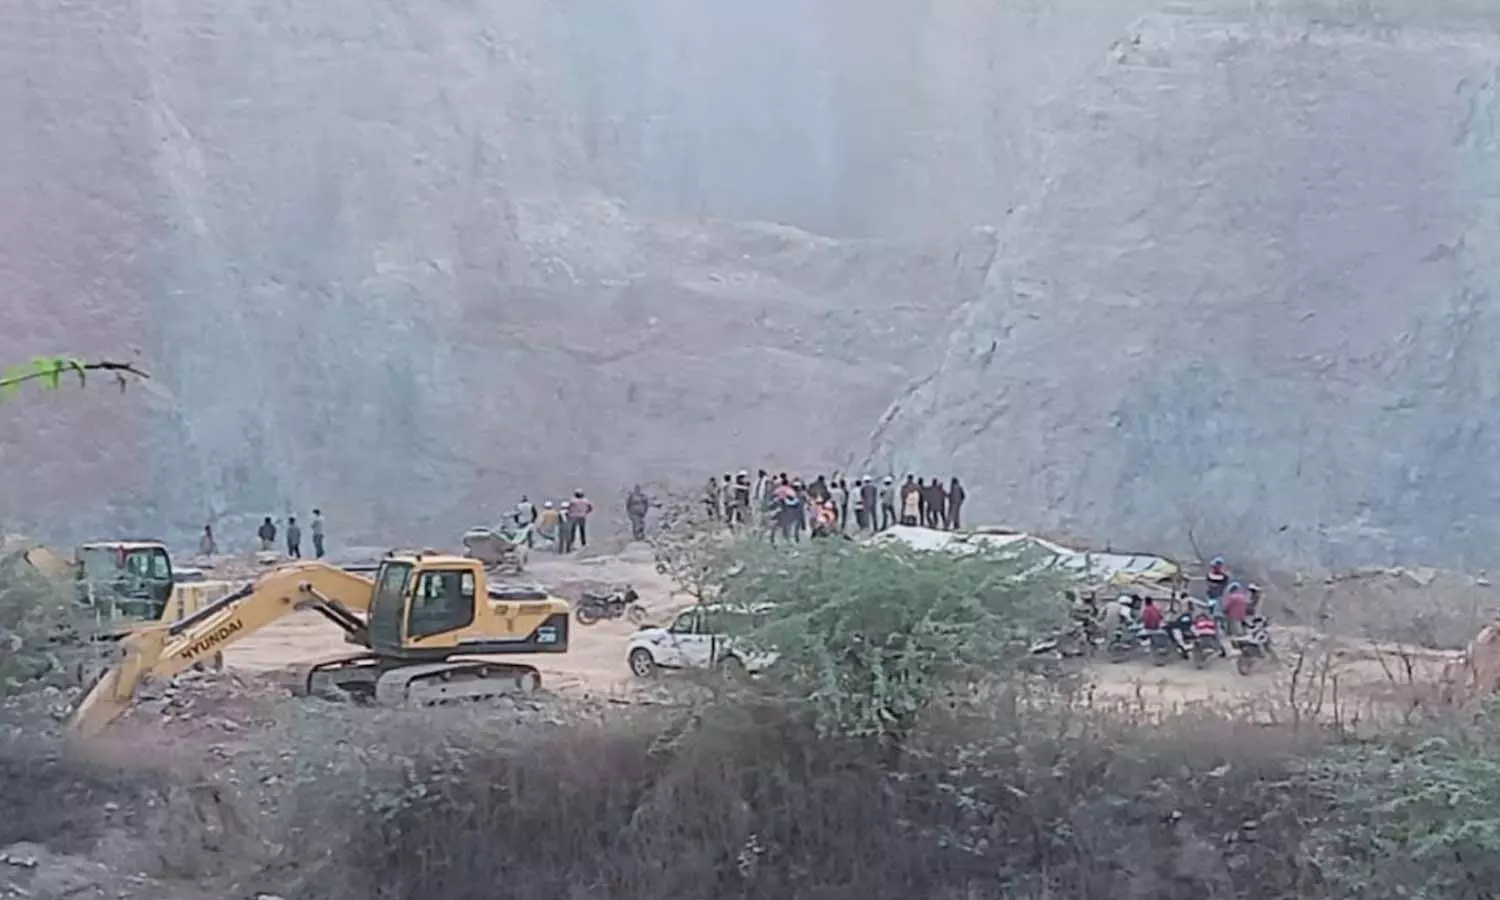 Sonbhadra Stone Mining Industry: सोनभद्र में पत्थर खनन उद्योग पर संकट, 20 खदानों के संचालन पर रोक, इन मानकों की हो रही थी अनदेखी